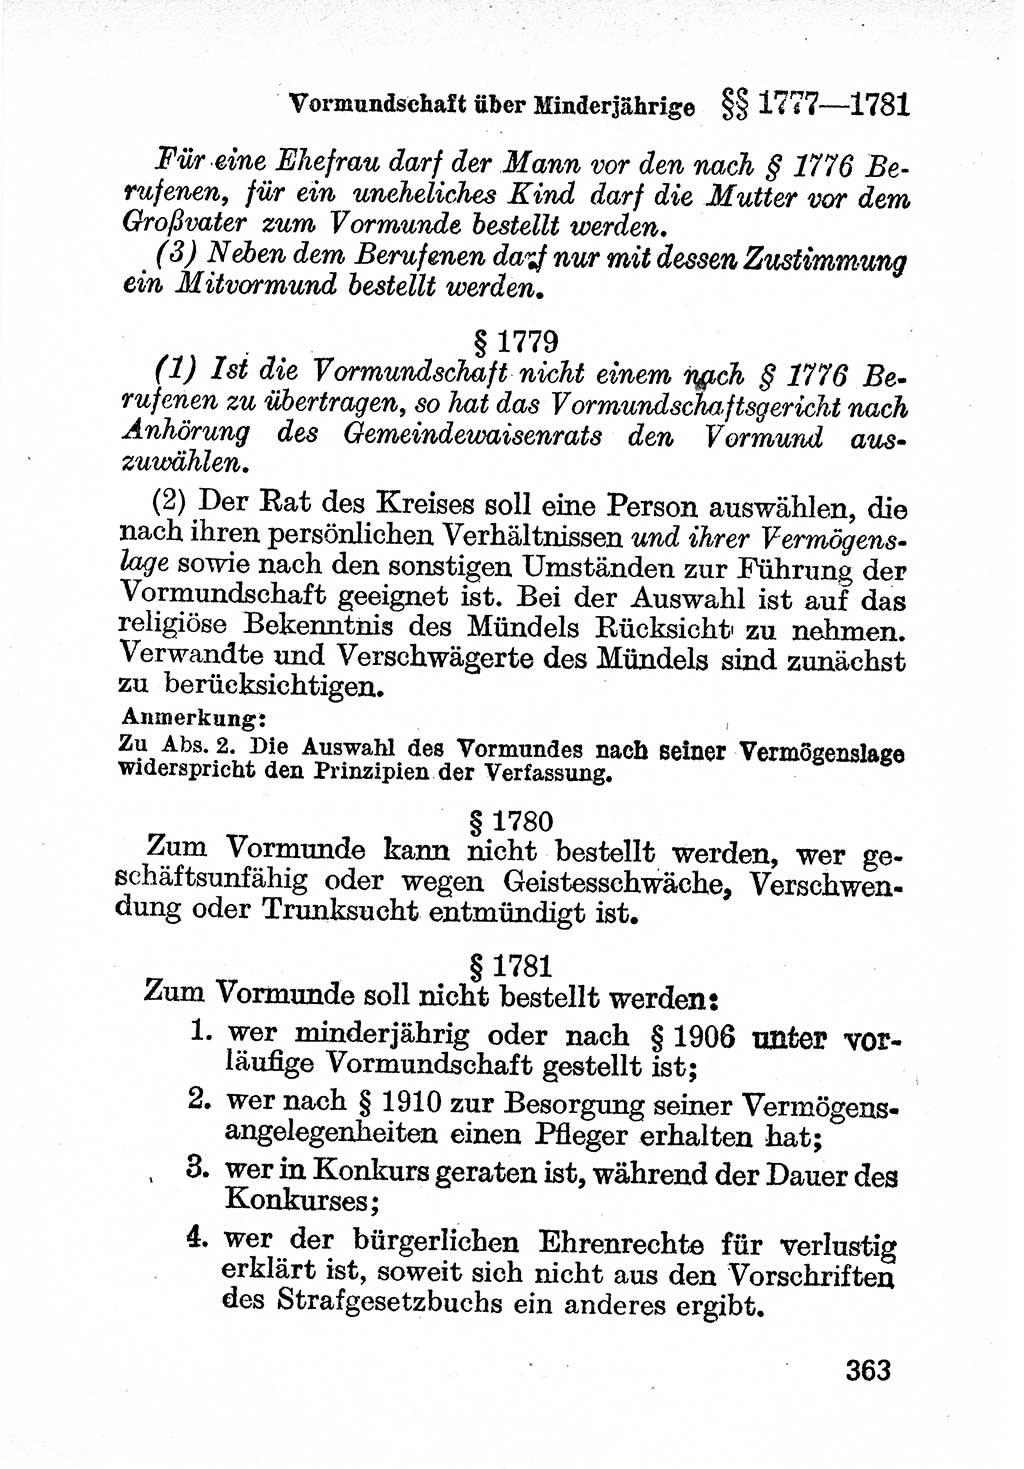 Bürgerliches Gesetzbuch (BGB) nebst wichtigen Nebengesetzen [Deutsche Demokratische Republik (DDR)] 1956, Seite 363 (BGB Nebenges. DDR 1956, S. 363)